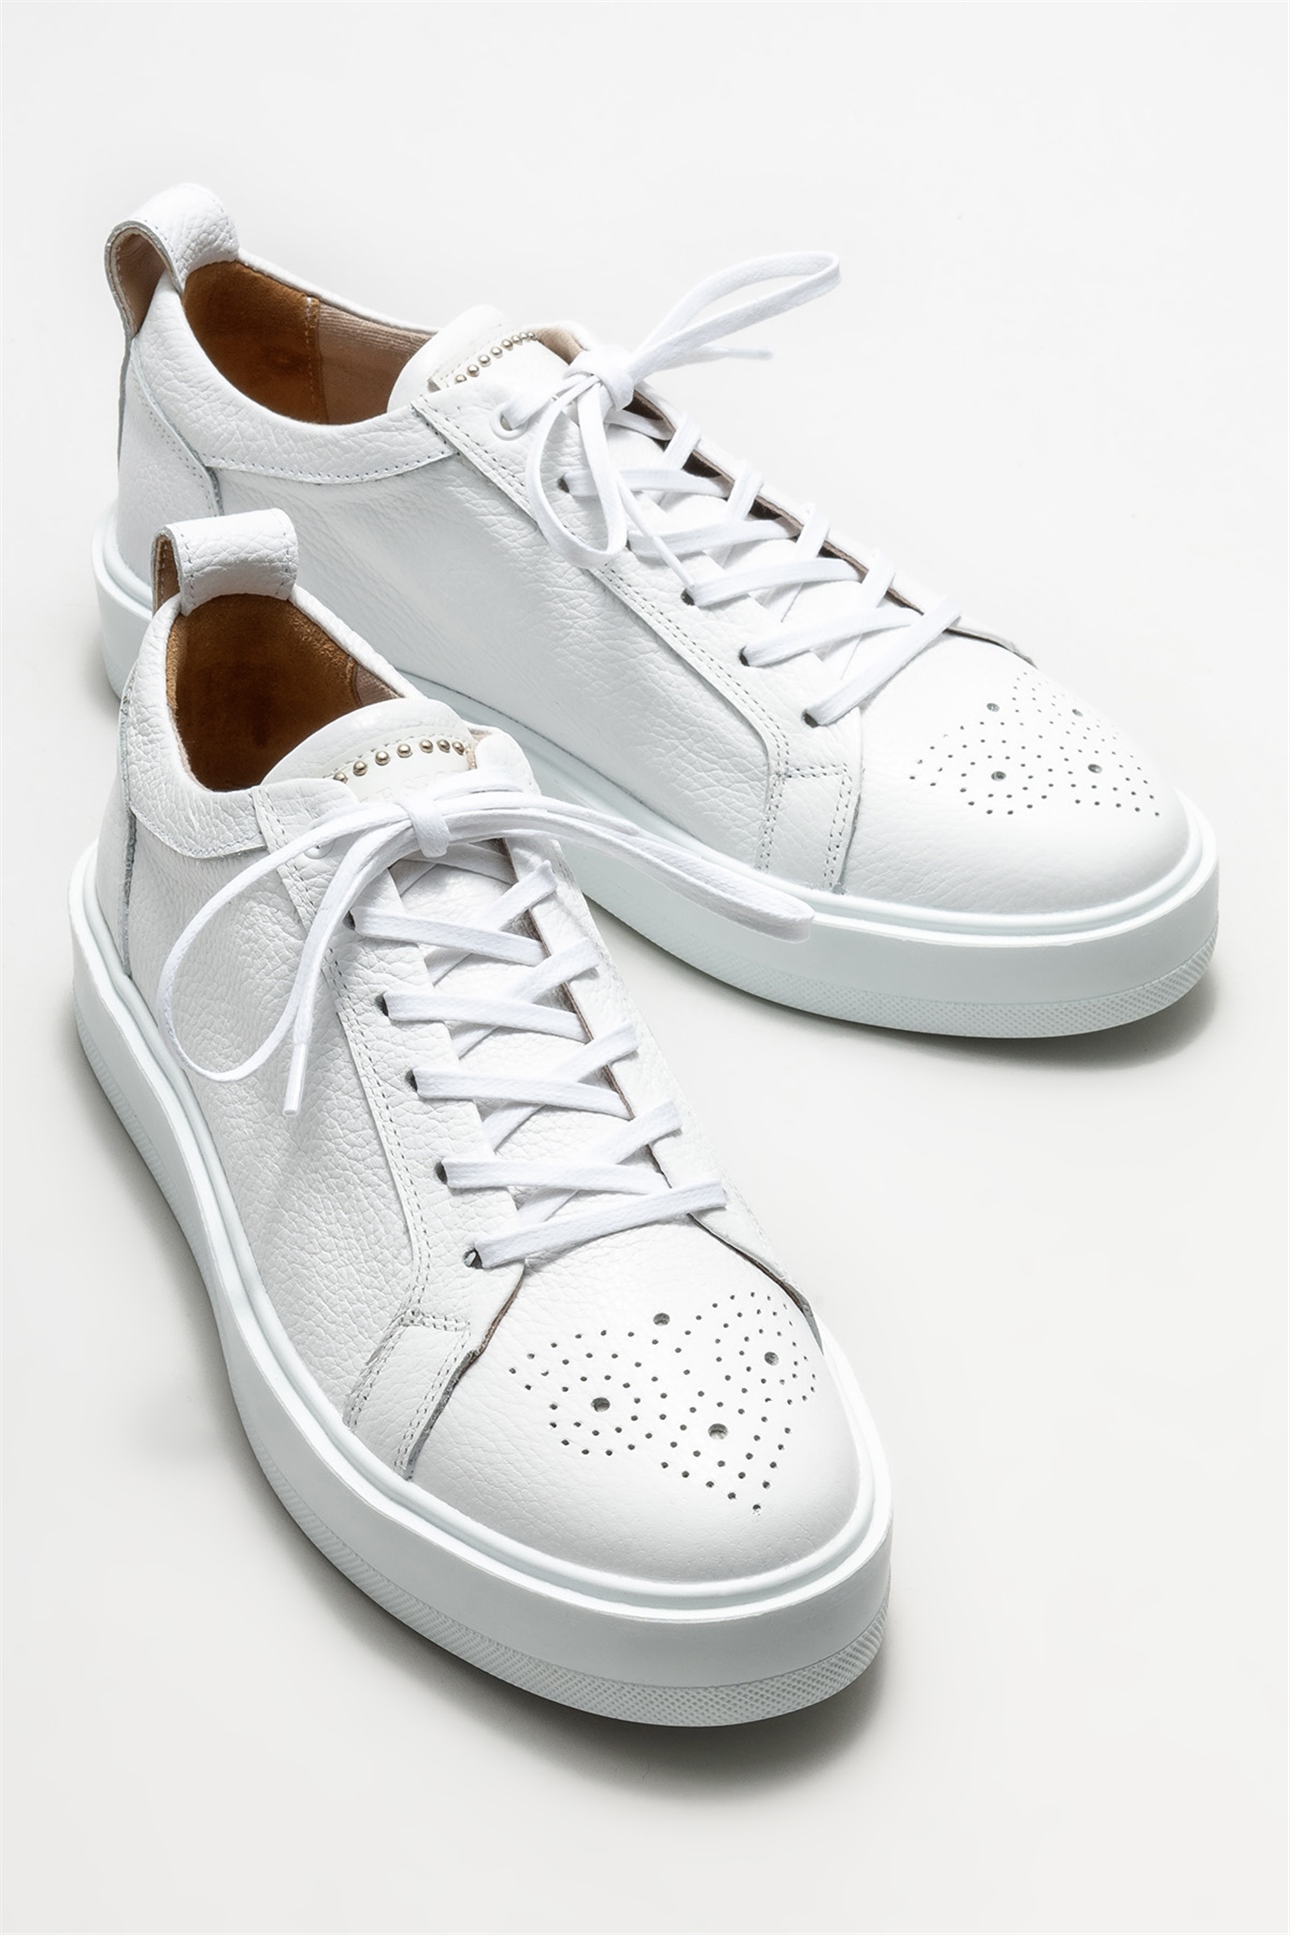 Beyaz Deri Erkek Spor Ayakkabı Satın Al! PAYSON-2-02 Fiyatı | Elle Shoes